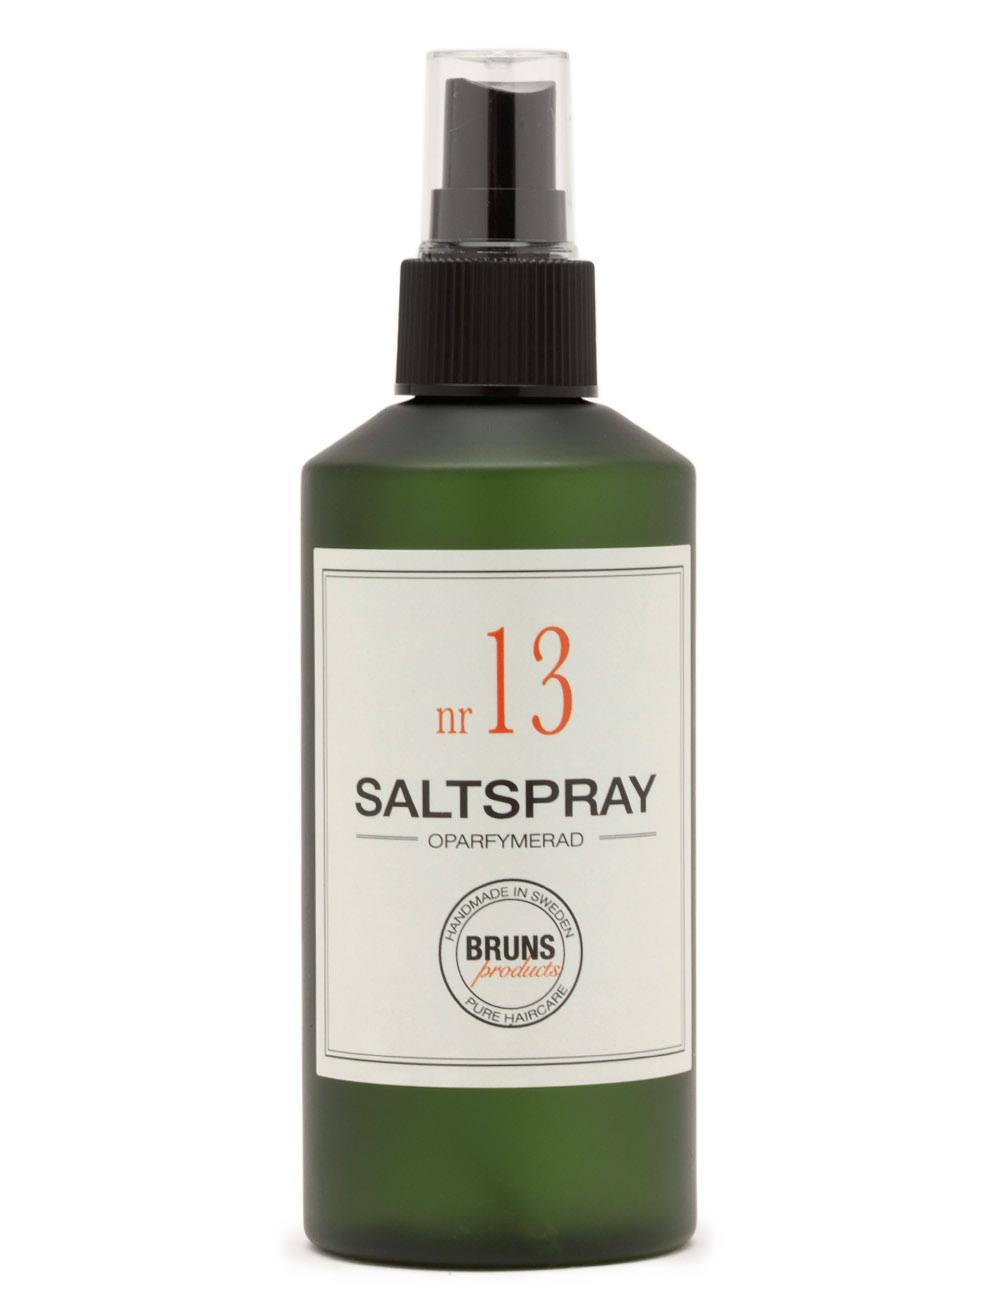 Billede af Bruns Nr. 13 Saltspray Parfumefri 200 ml.